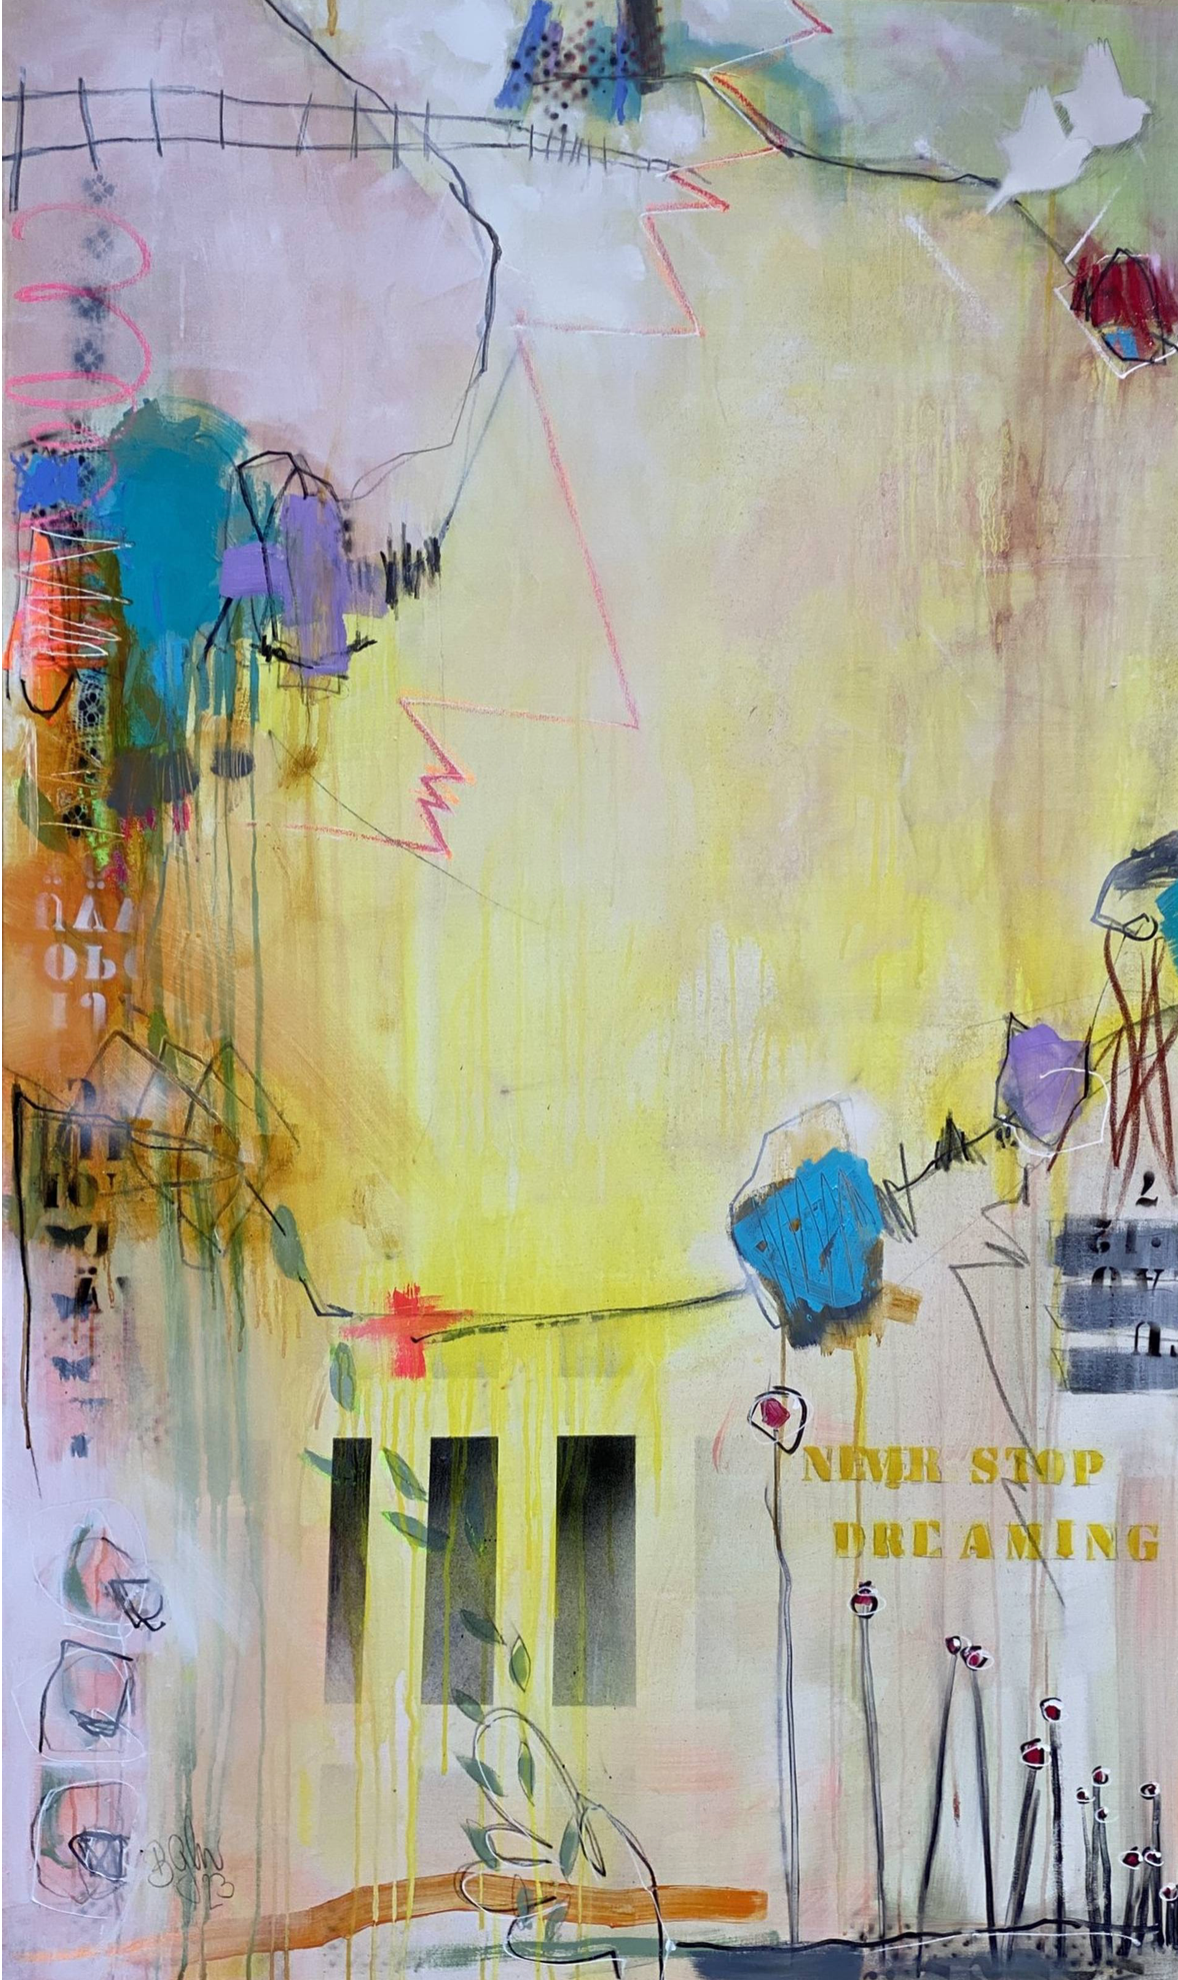 Bea G Schuberts "Never stop dreaming No.2" ist ein abstraktes farbenfrohes Gemälde mit der dominierenden Farbe Gelb. 